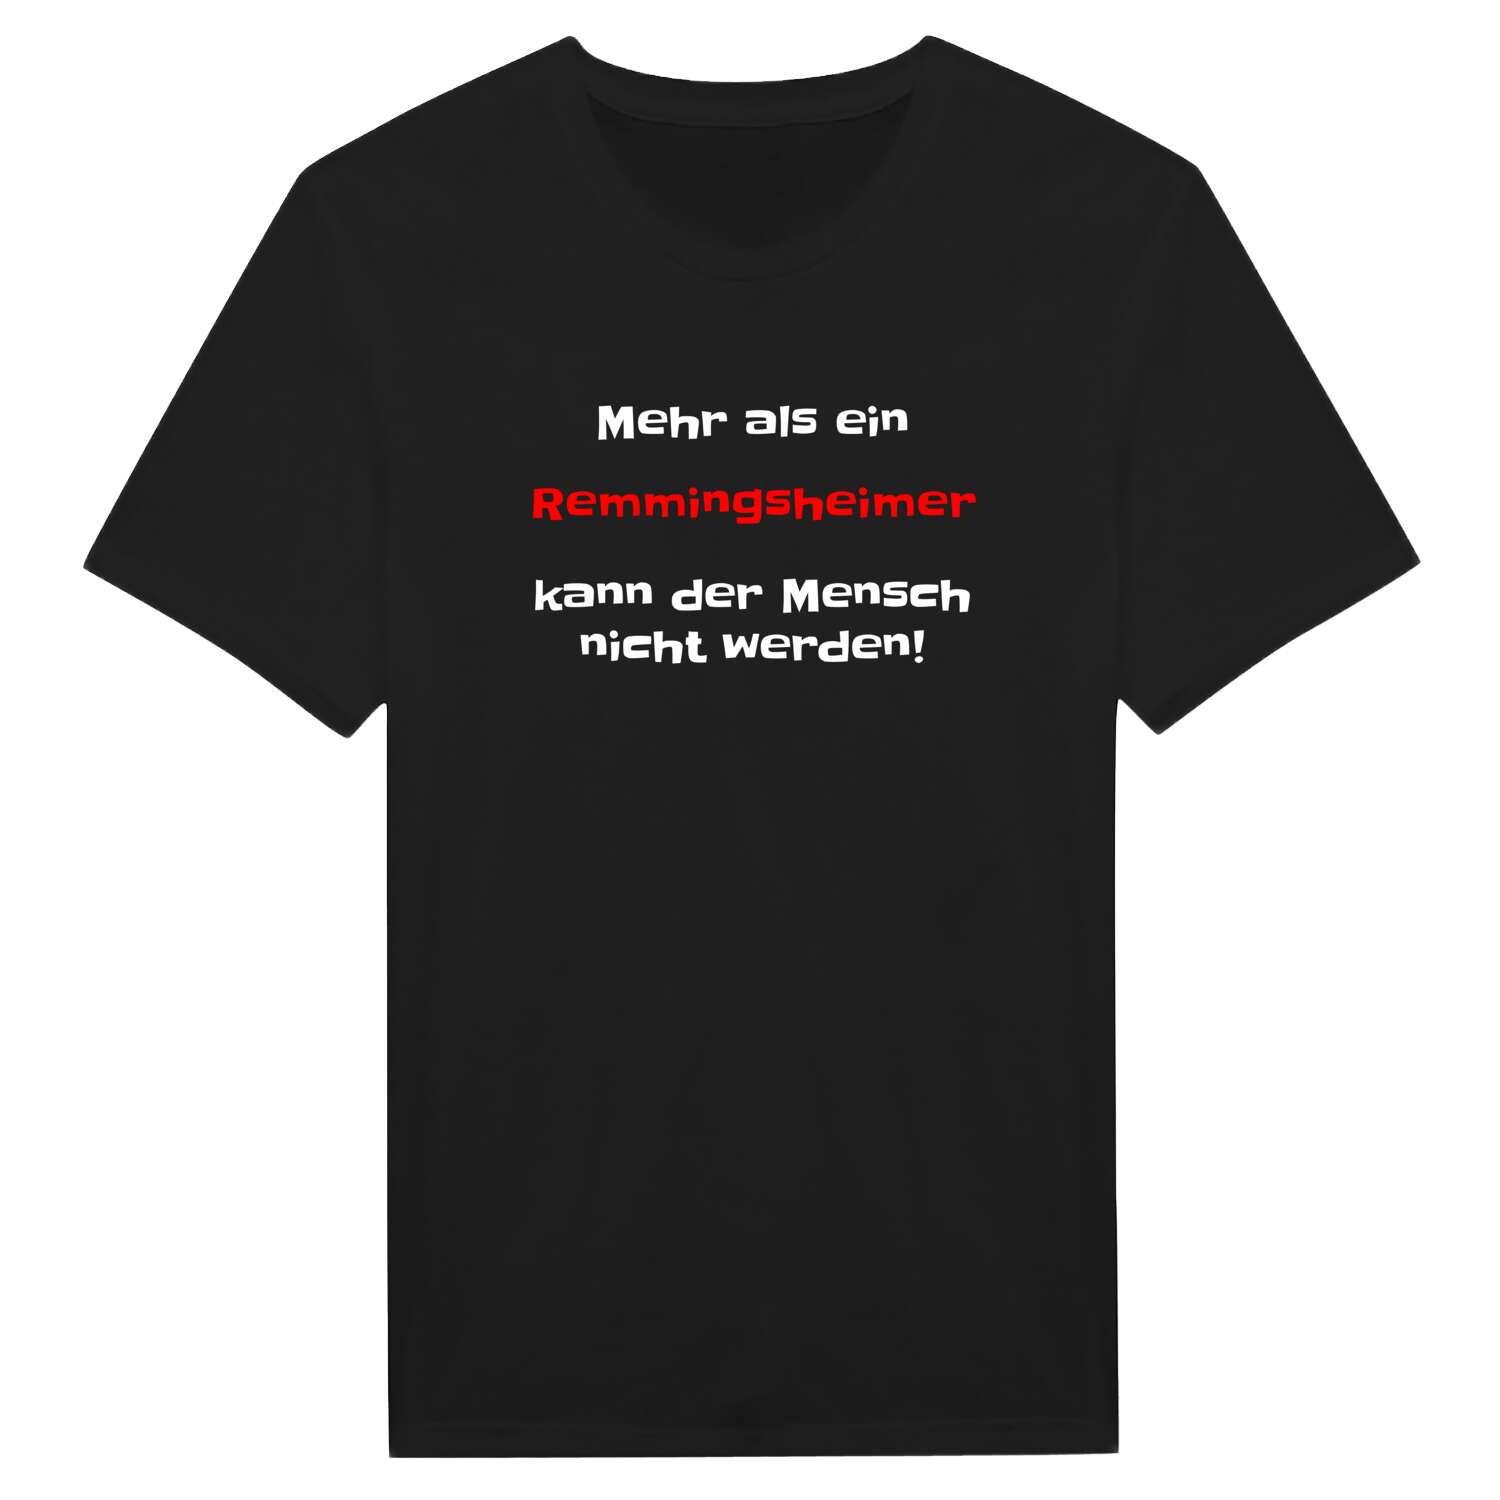 Remmingsheim T-Shirt »Mehr als ein«